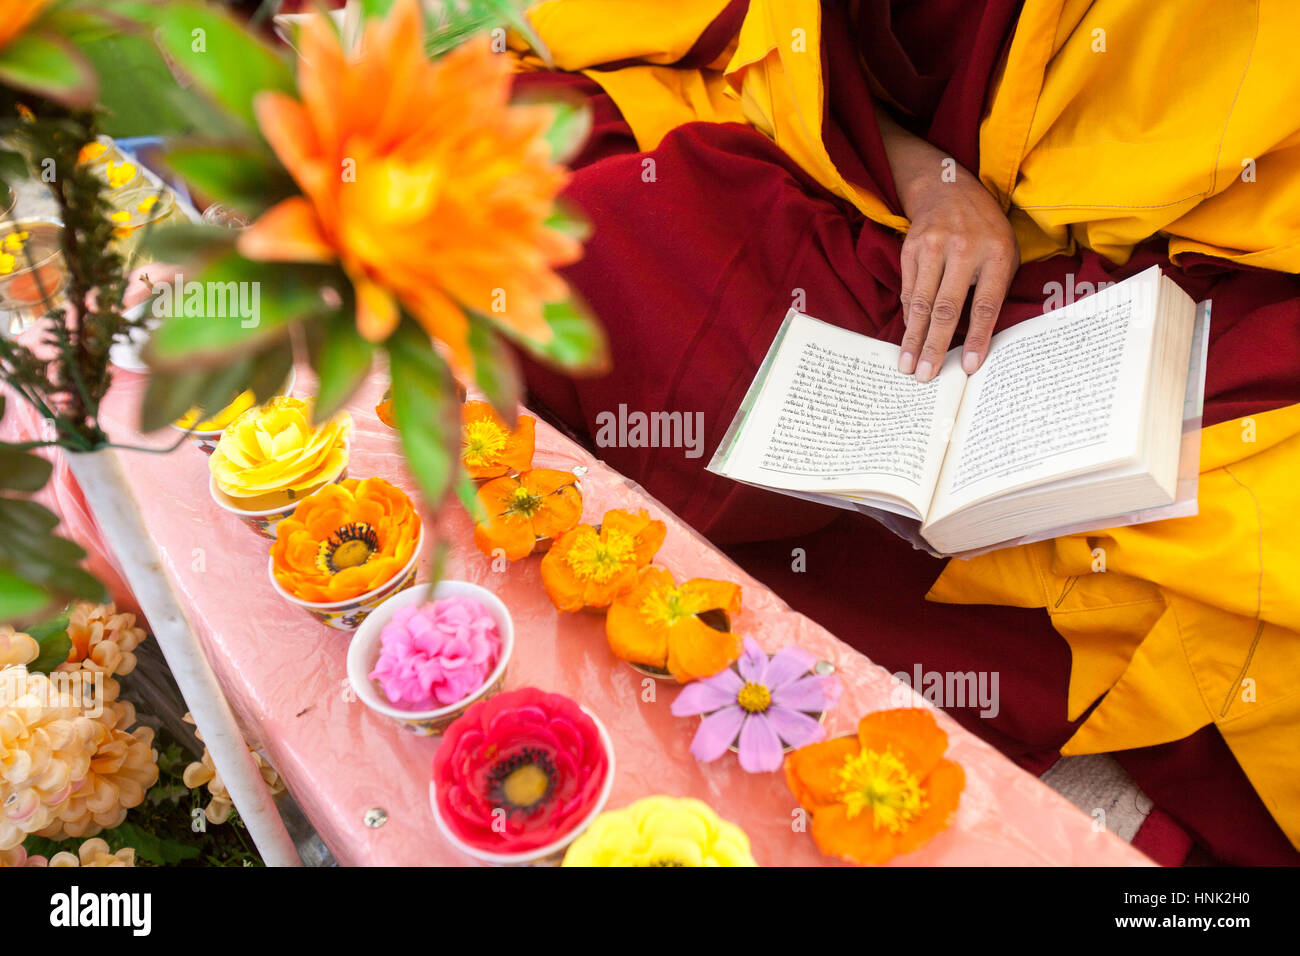 La nonne bouddhiste tibétain prie et donne des fleurs comme offrandes lors d'une cérémonie à la nonnerie Tagong dans le plateau tibétain, Sichuan, Chine Banque D'Images